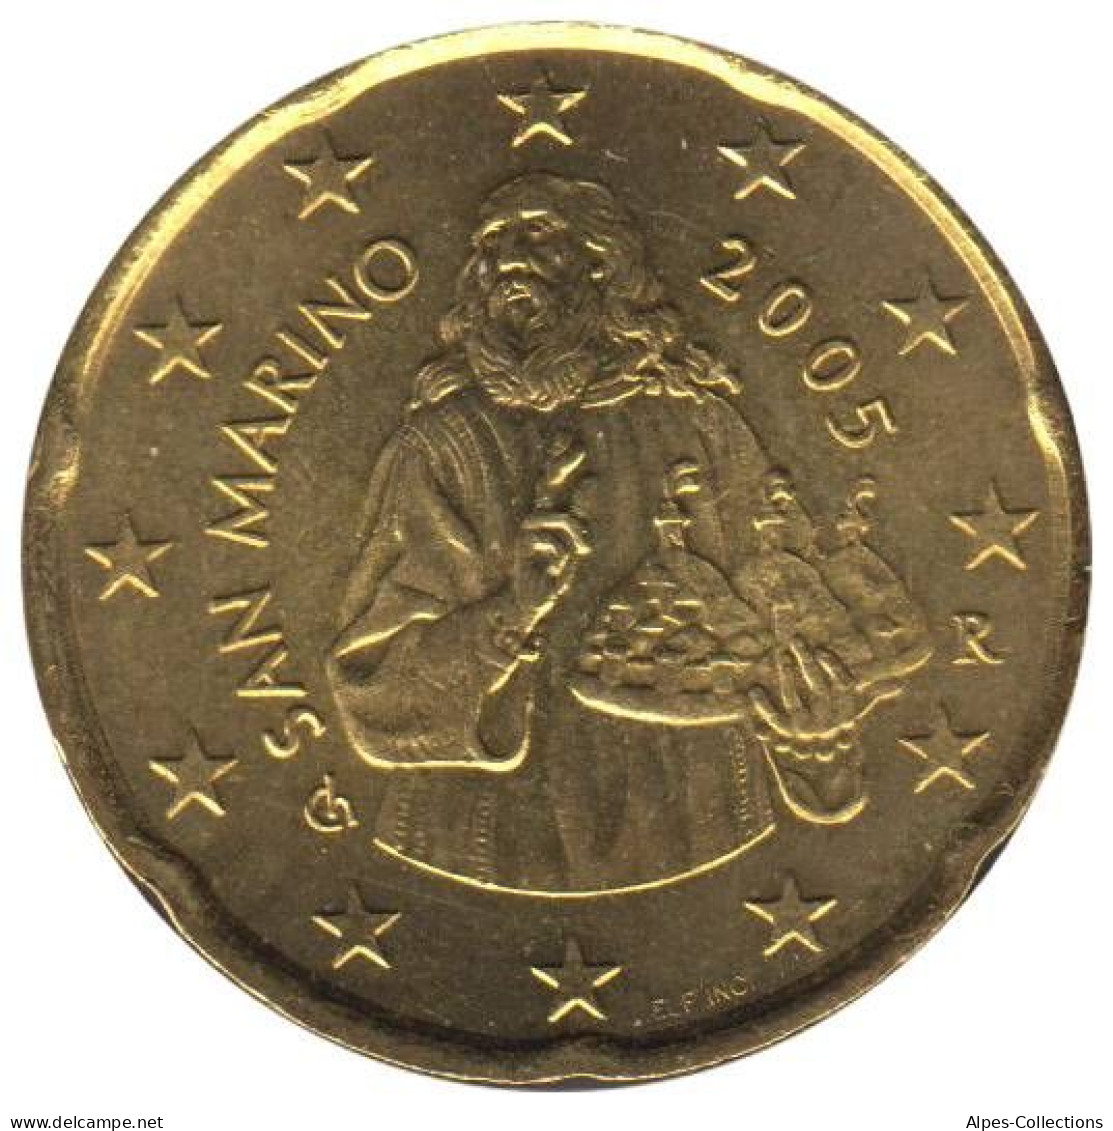 SA02005.1 - SAINT MARIN - 20 Cents - 2005 - San Marino